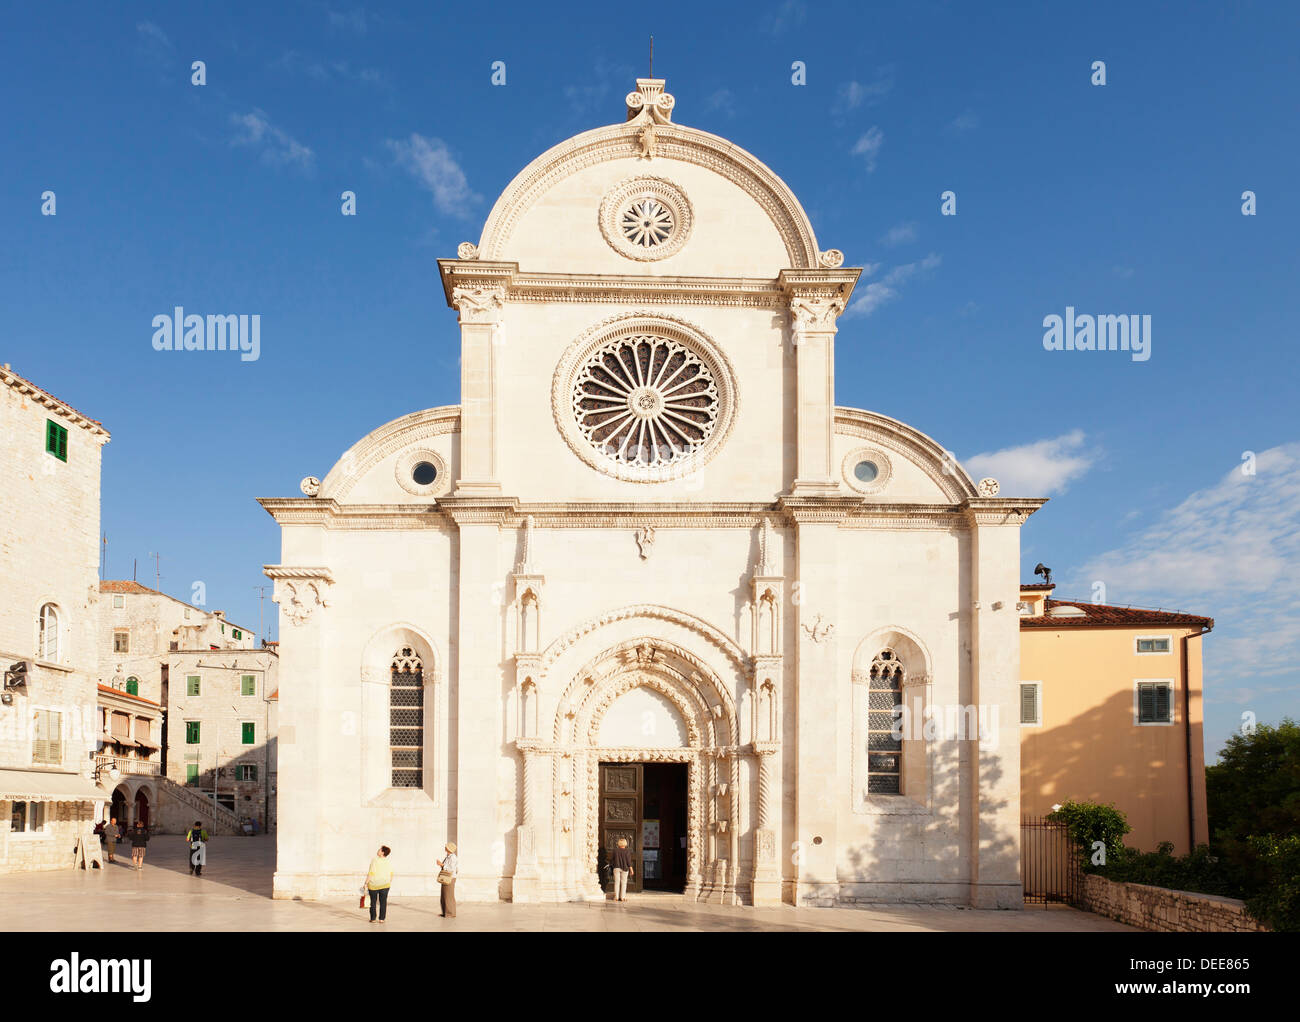 Cathédrale de Saint Jacob (Cathédrale de Saint James), UNESCO World Heritage Site, Sibenik, Dalmatie, Croatie, Europe Banque D'Images